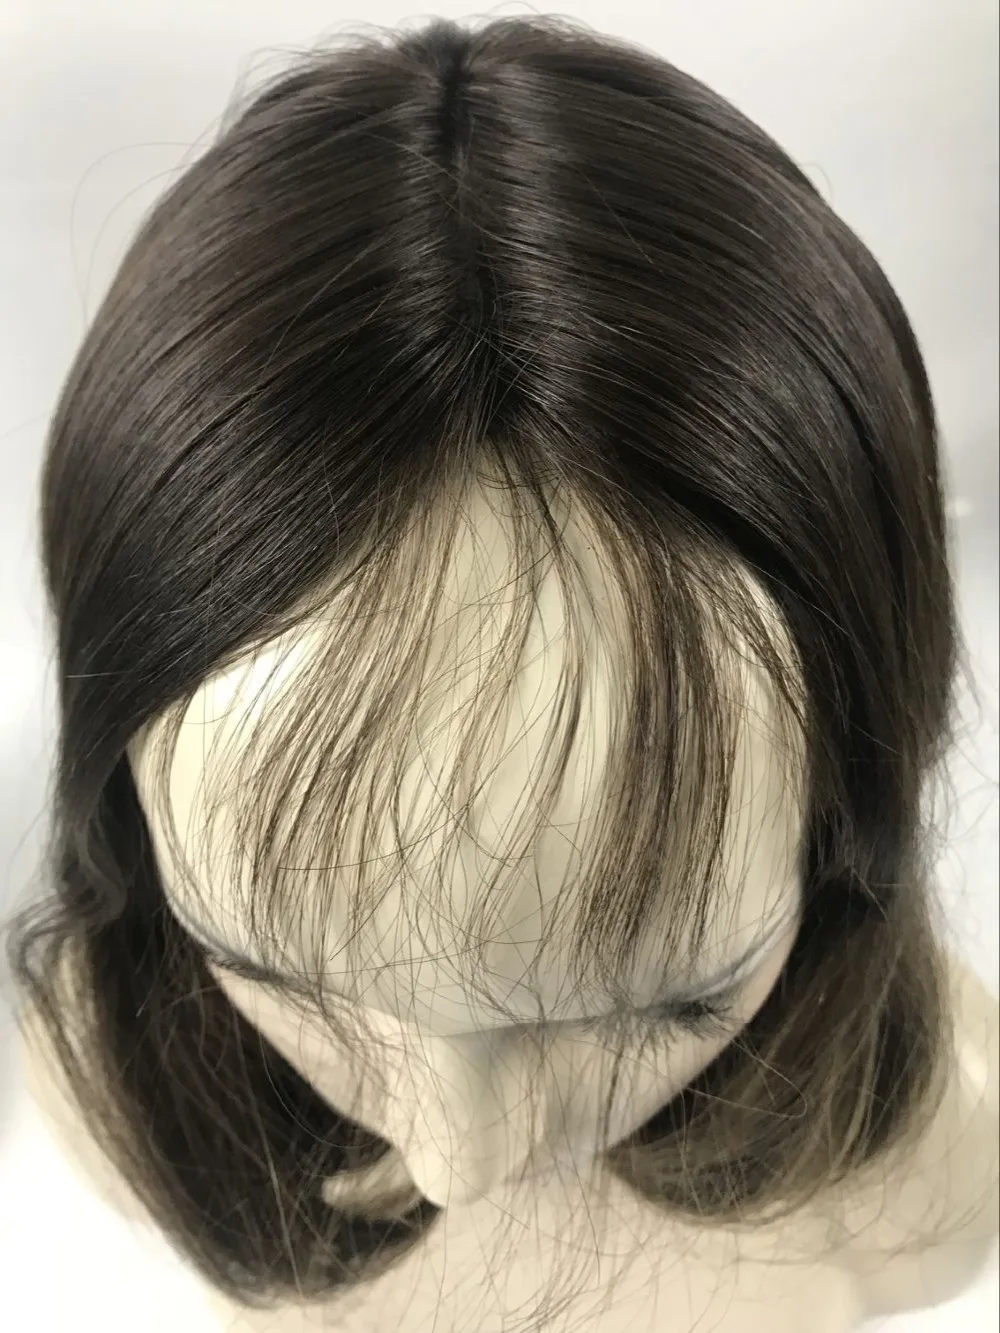 Tsingtaowigs заказ европейские натуральные волосы необработанные волосы 12 дюймов еврейский парик Best Sheitels парики